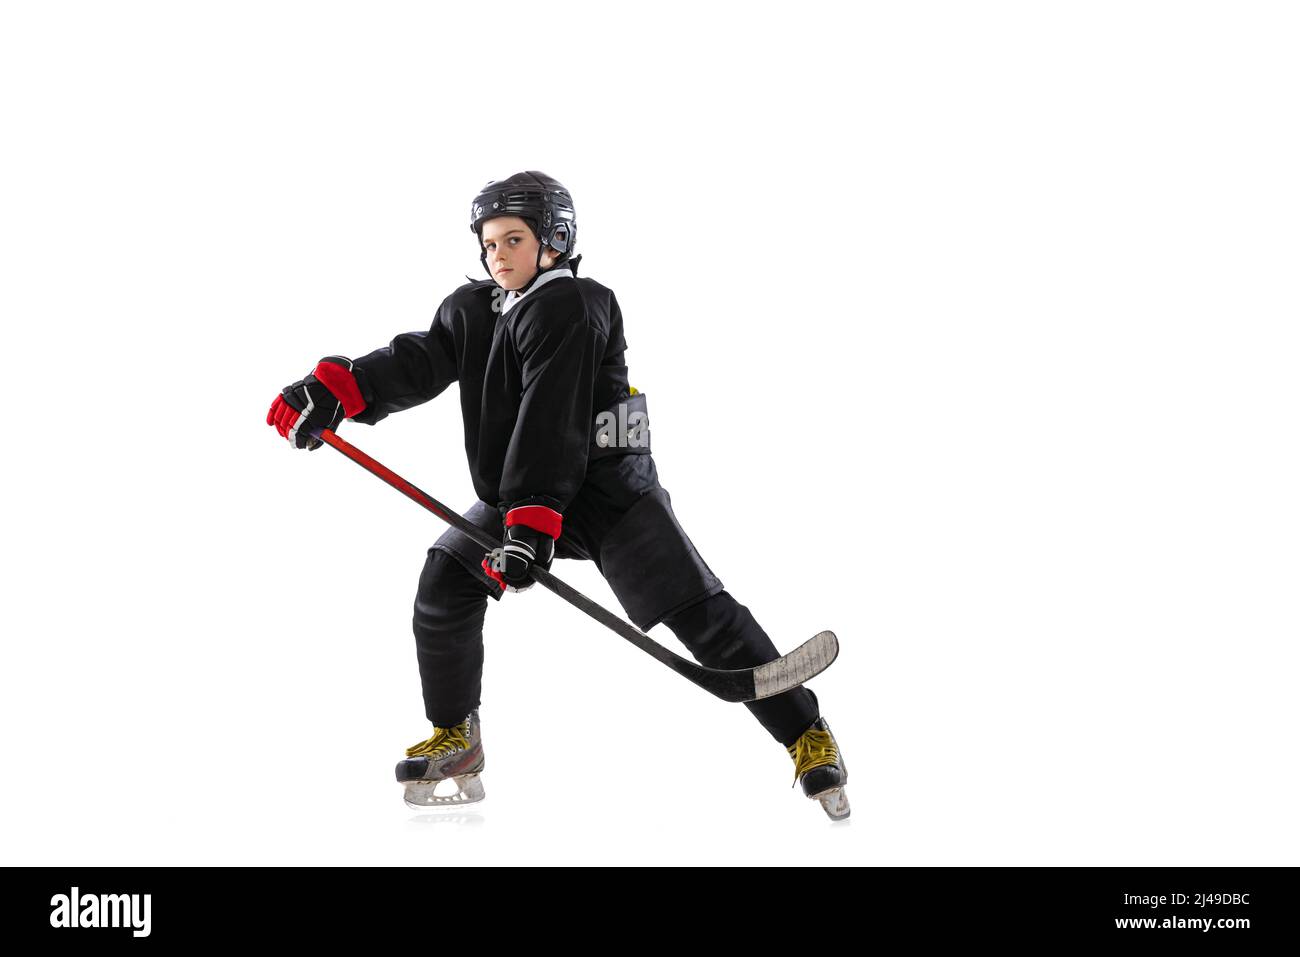 Concentration. Enfant, joueur de hockey avec bâton sur cour de glace et fond blanc. Banque D'Images